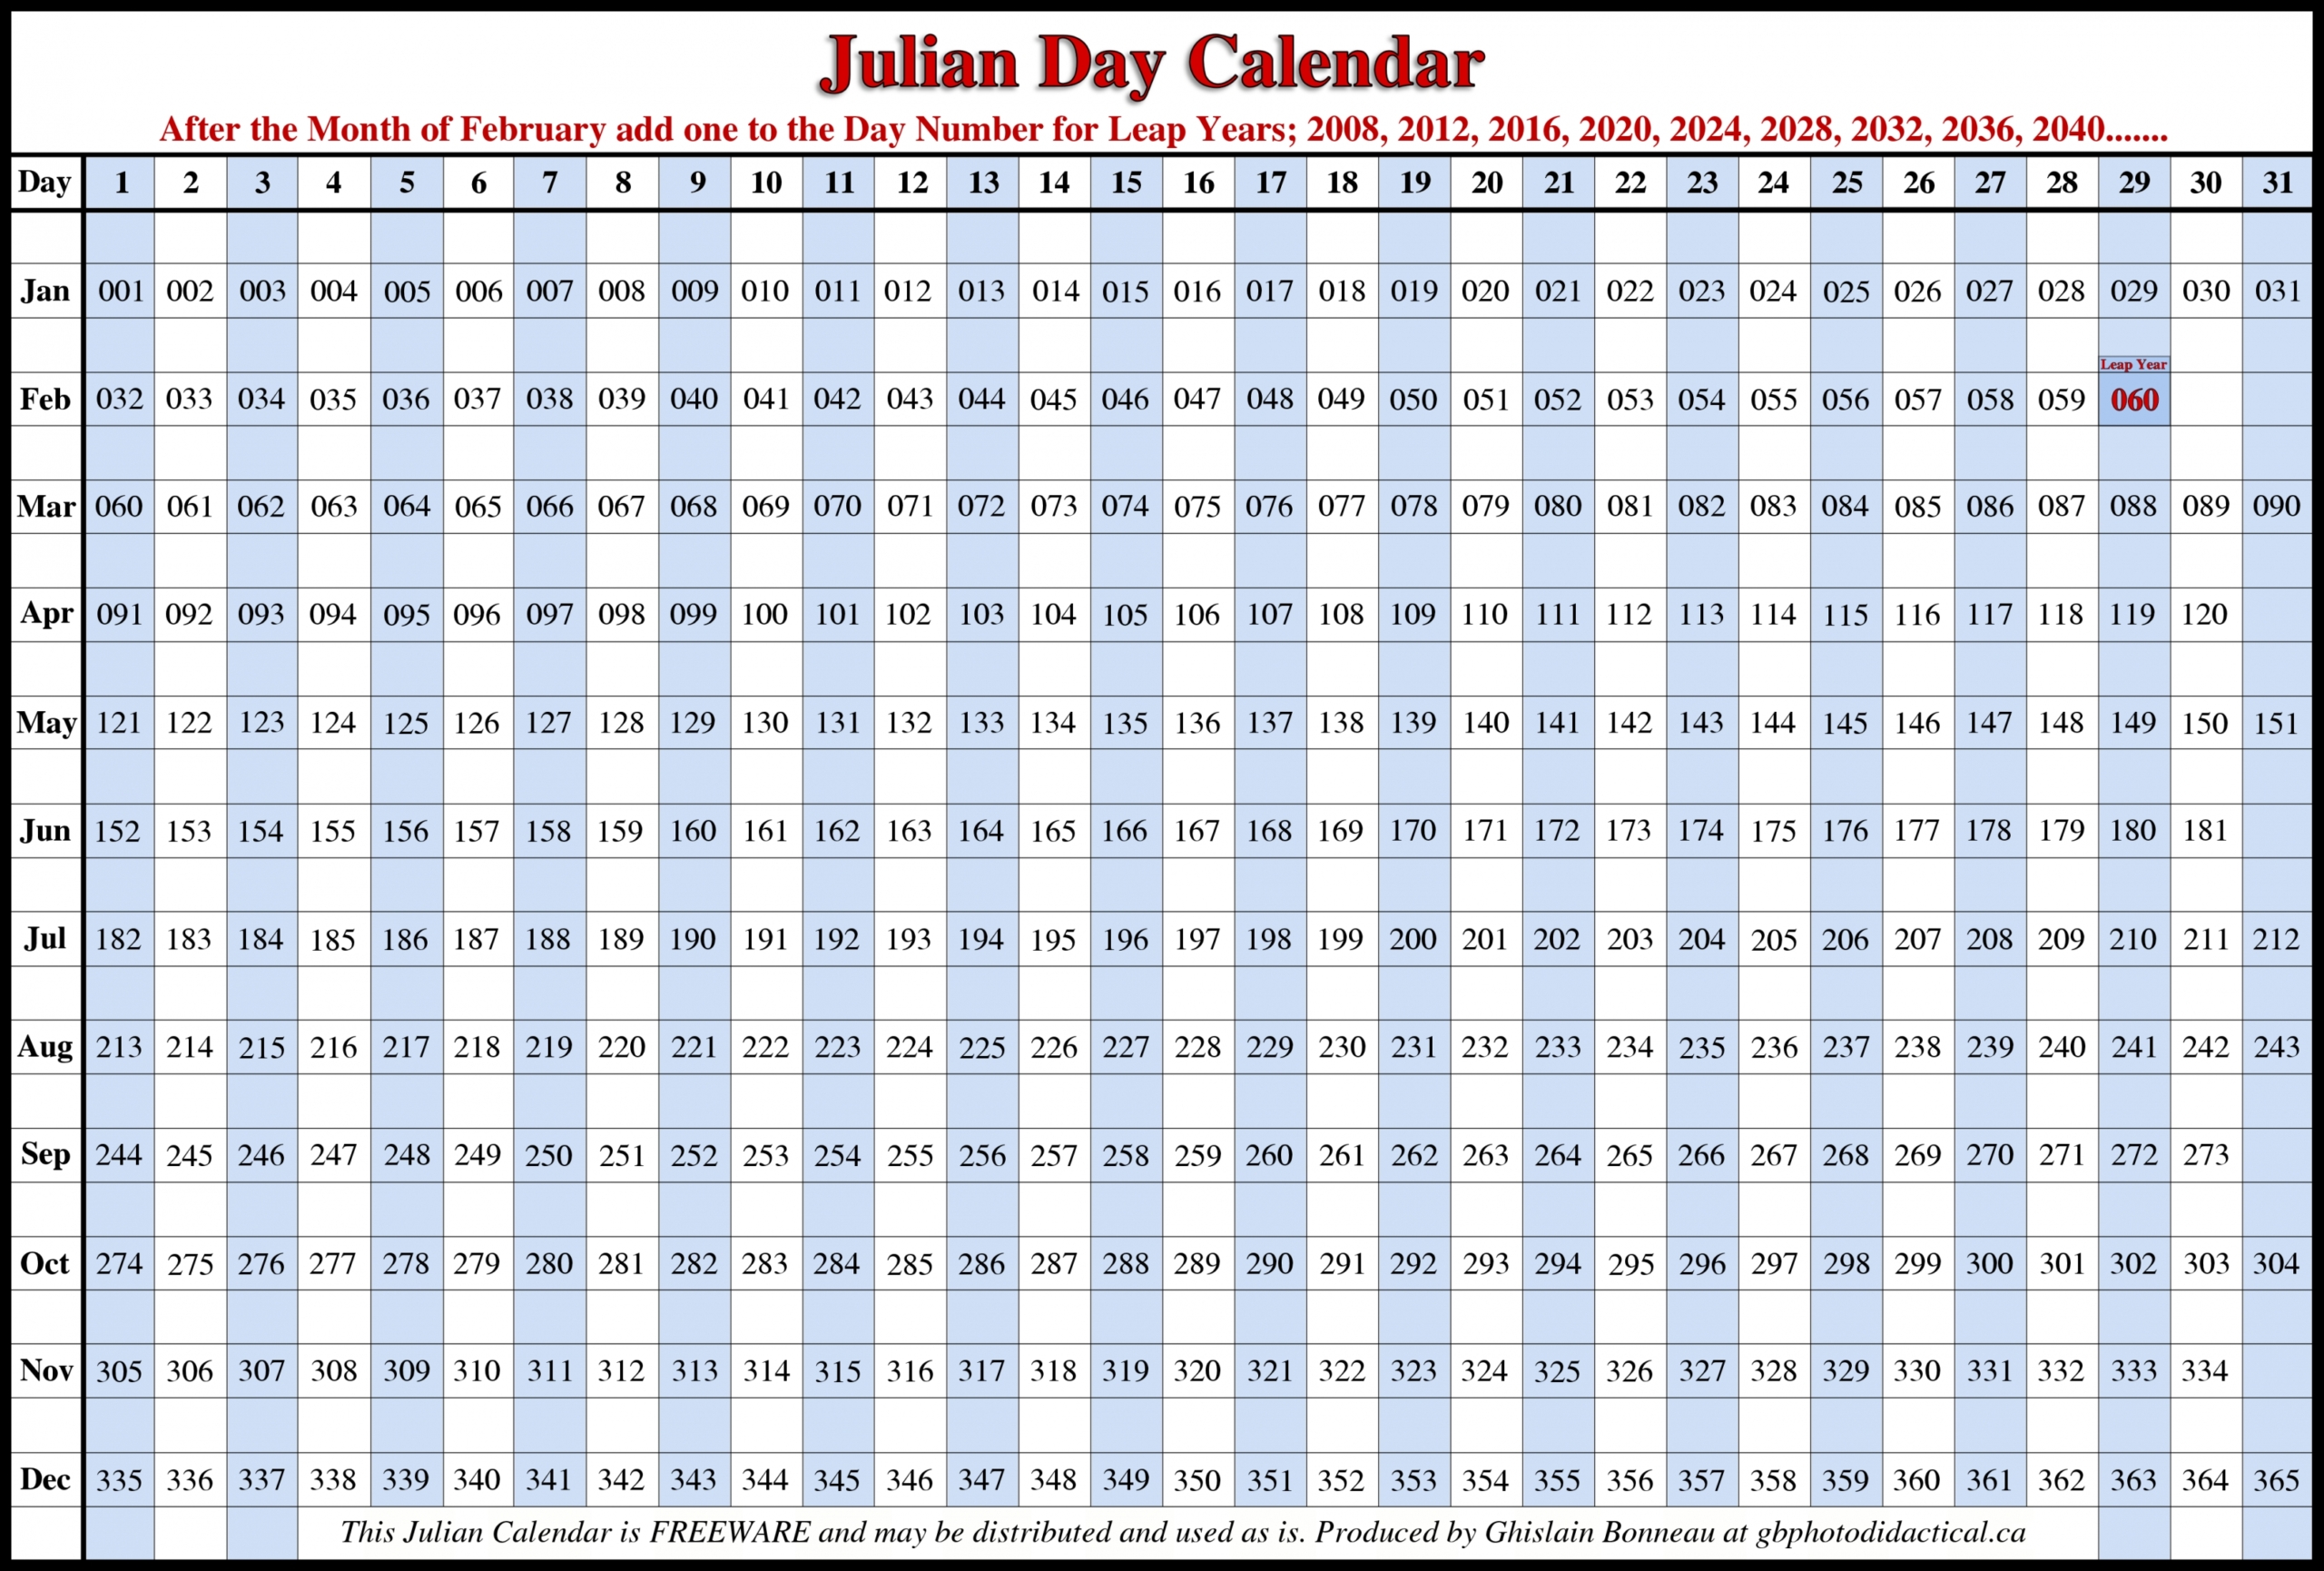 Get 2021 Julian Dates